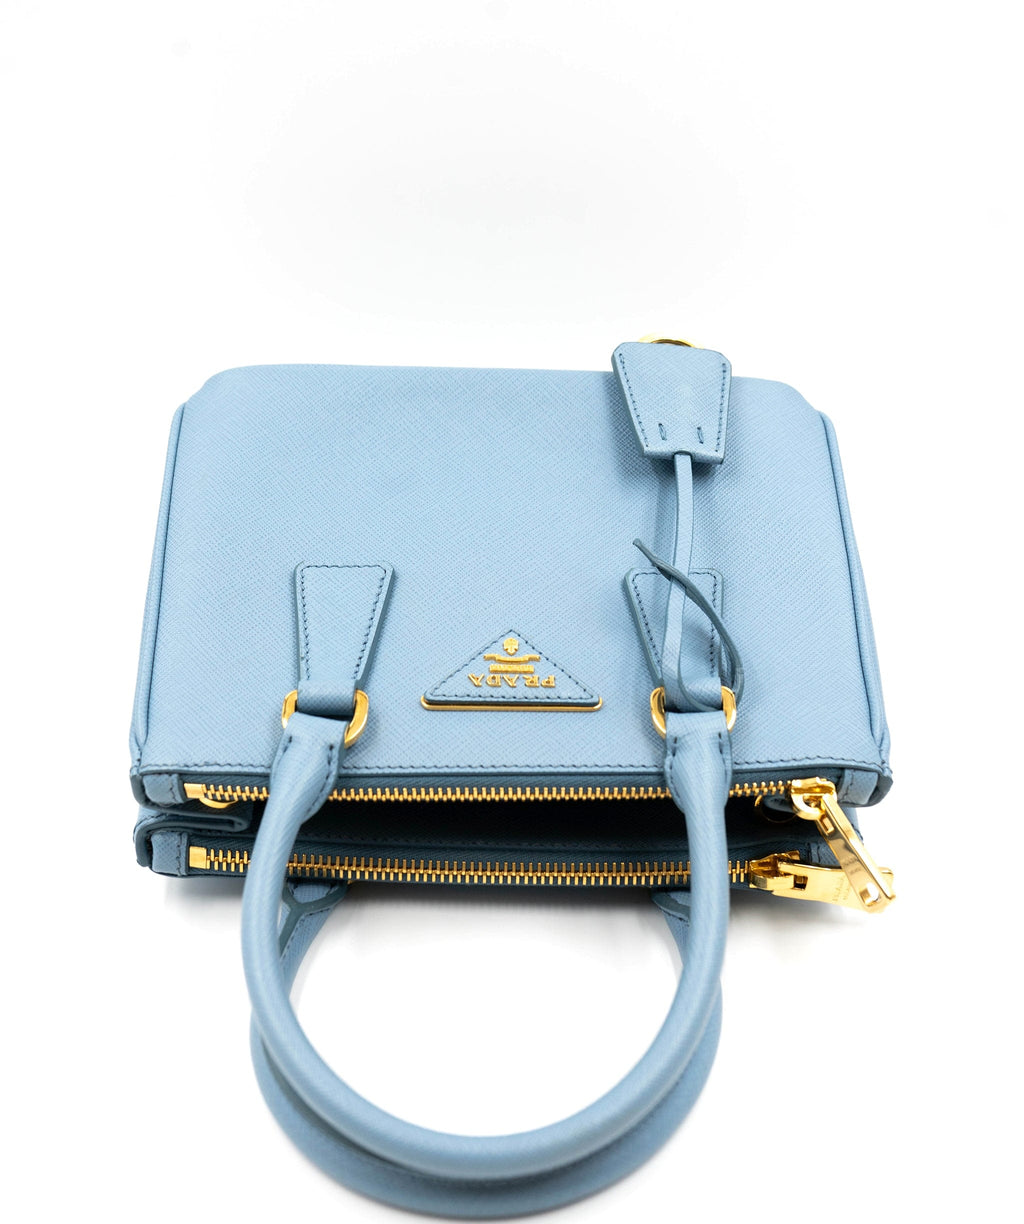 PRADA 🎀 Saffiano Galleria Mini Authentic Bag 